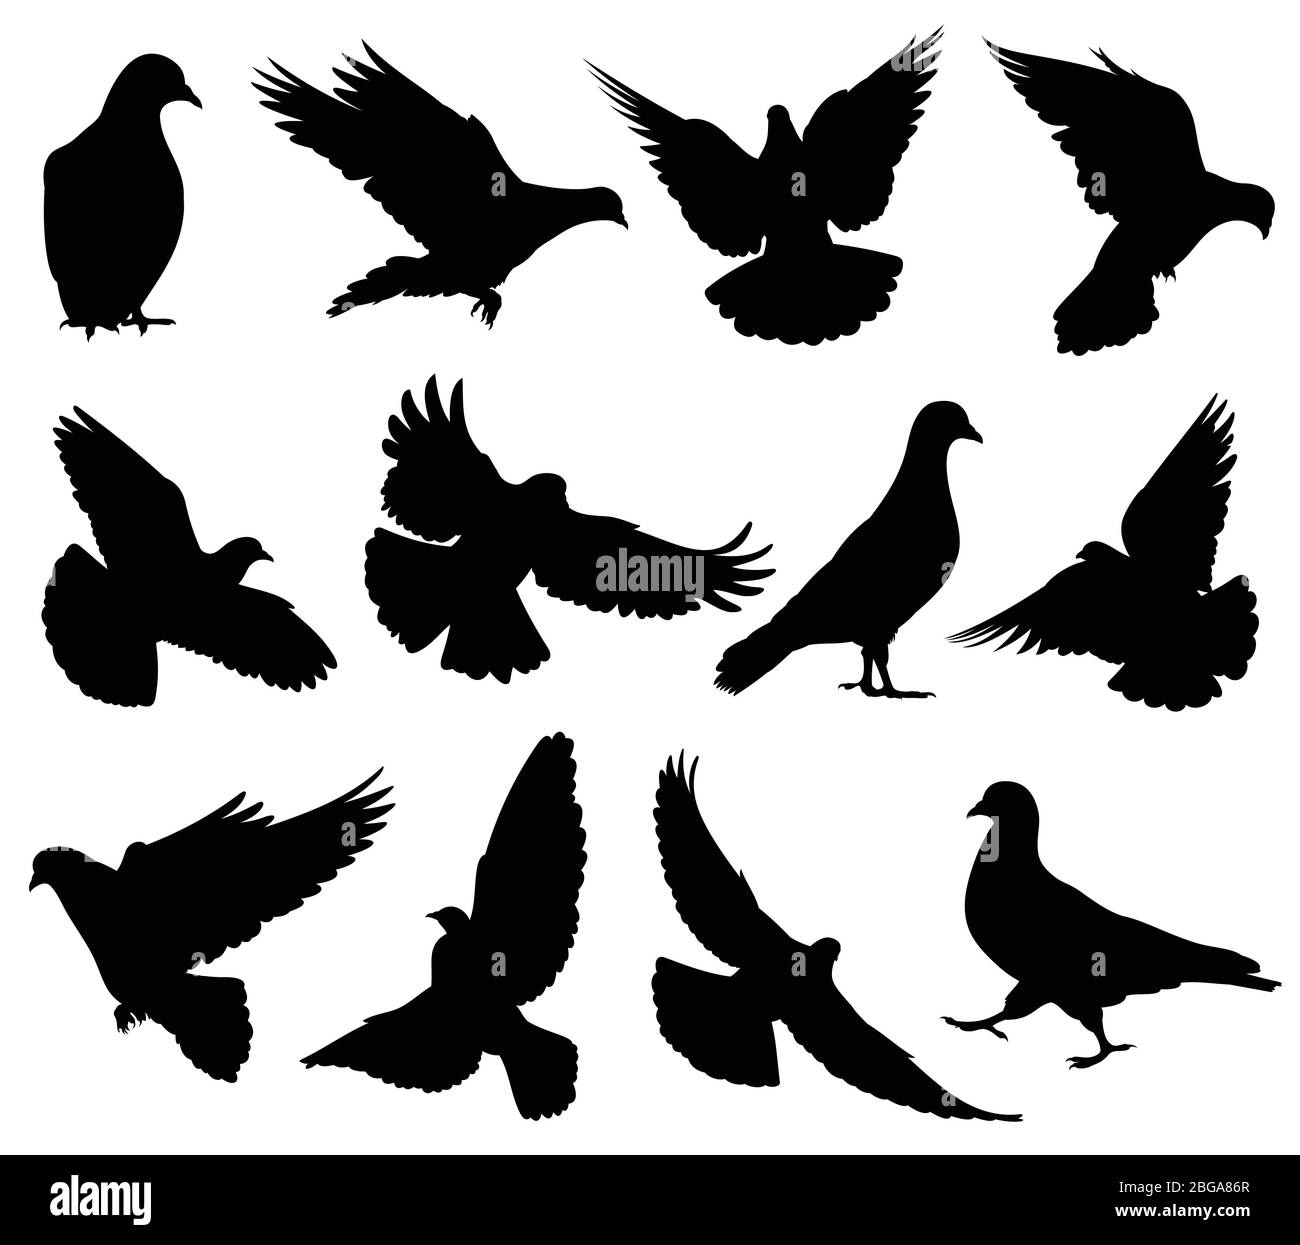 Silhouettes vectorielles en colombe volantes isolées. Les pigeons définissent les symboles de l'amour et de la paix. Illustration de la forme noire de la colombe et de la silhouette de pigeon Illustration de Vecteur